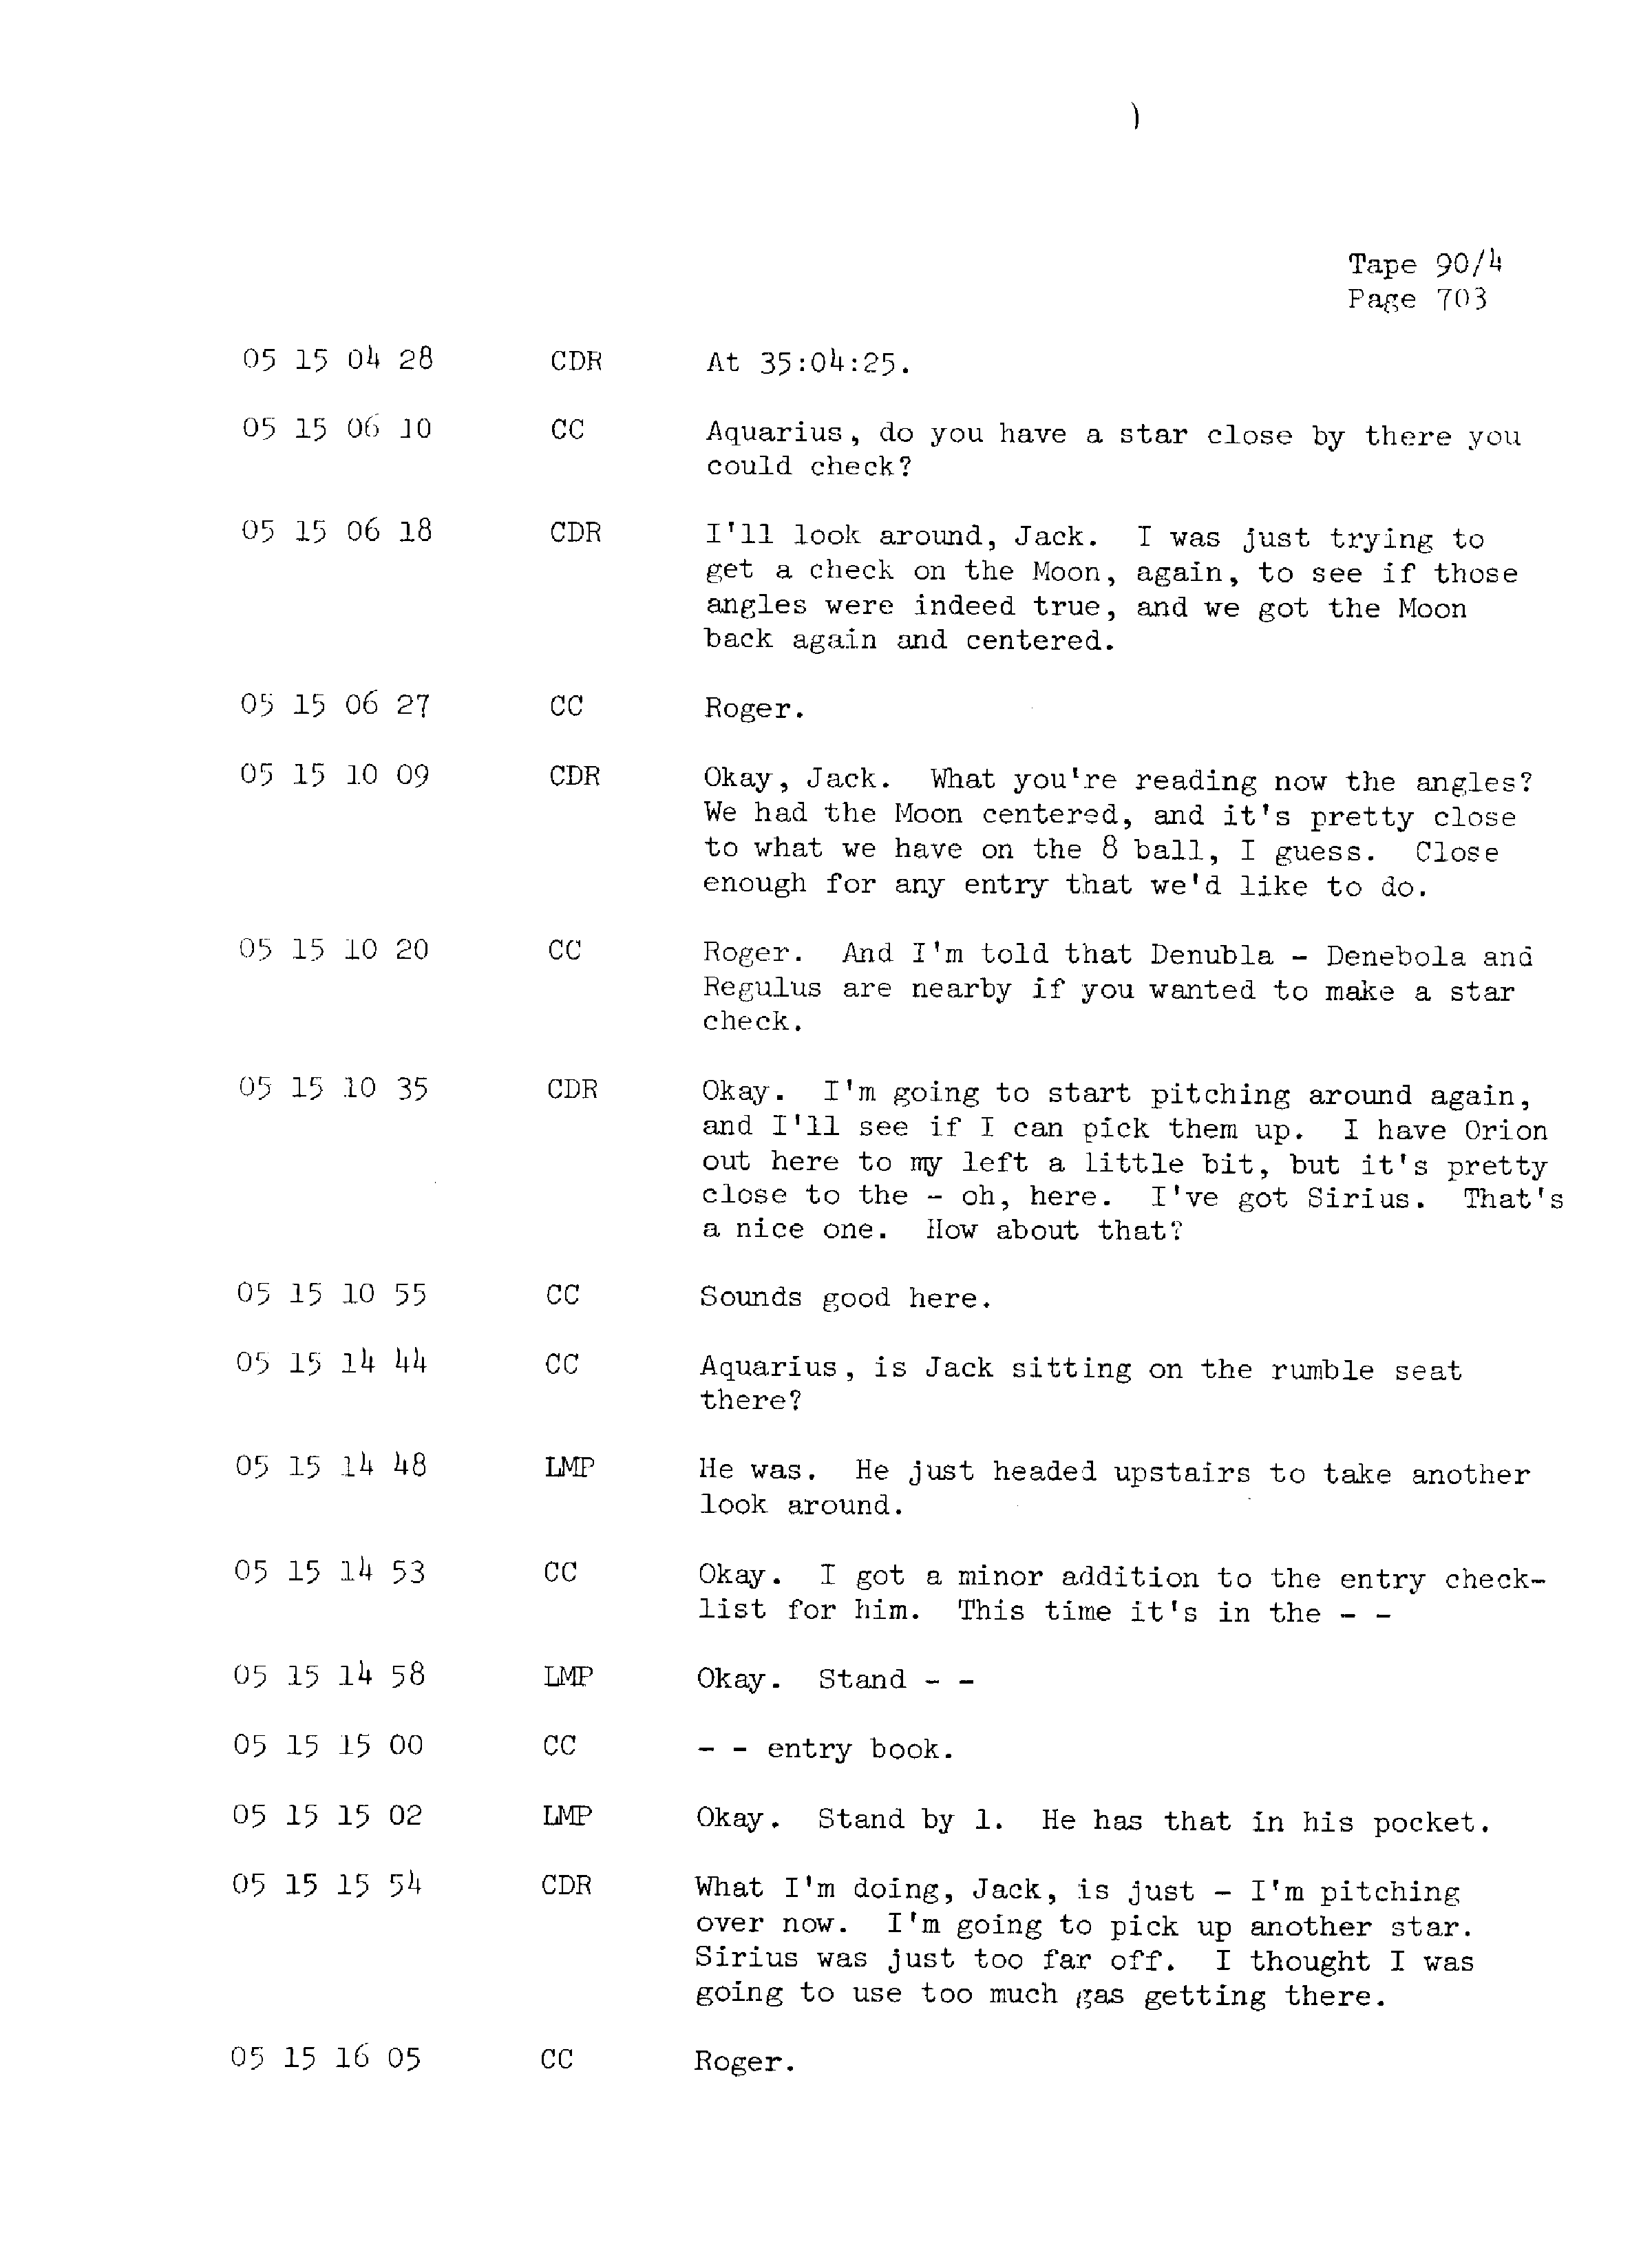 Page 710 of Apollo 13’s original transcript